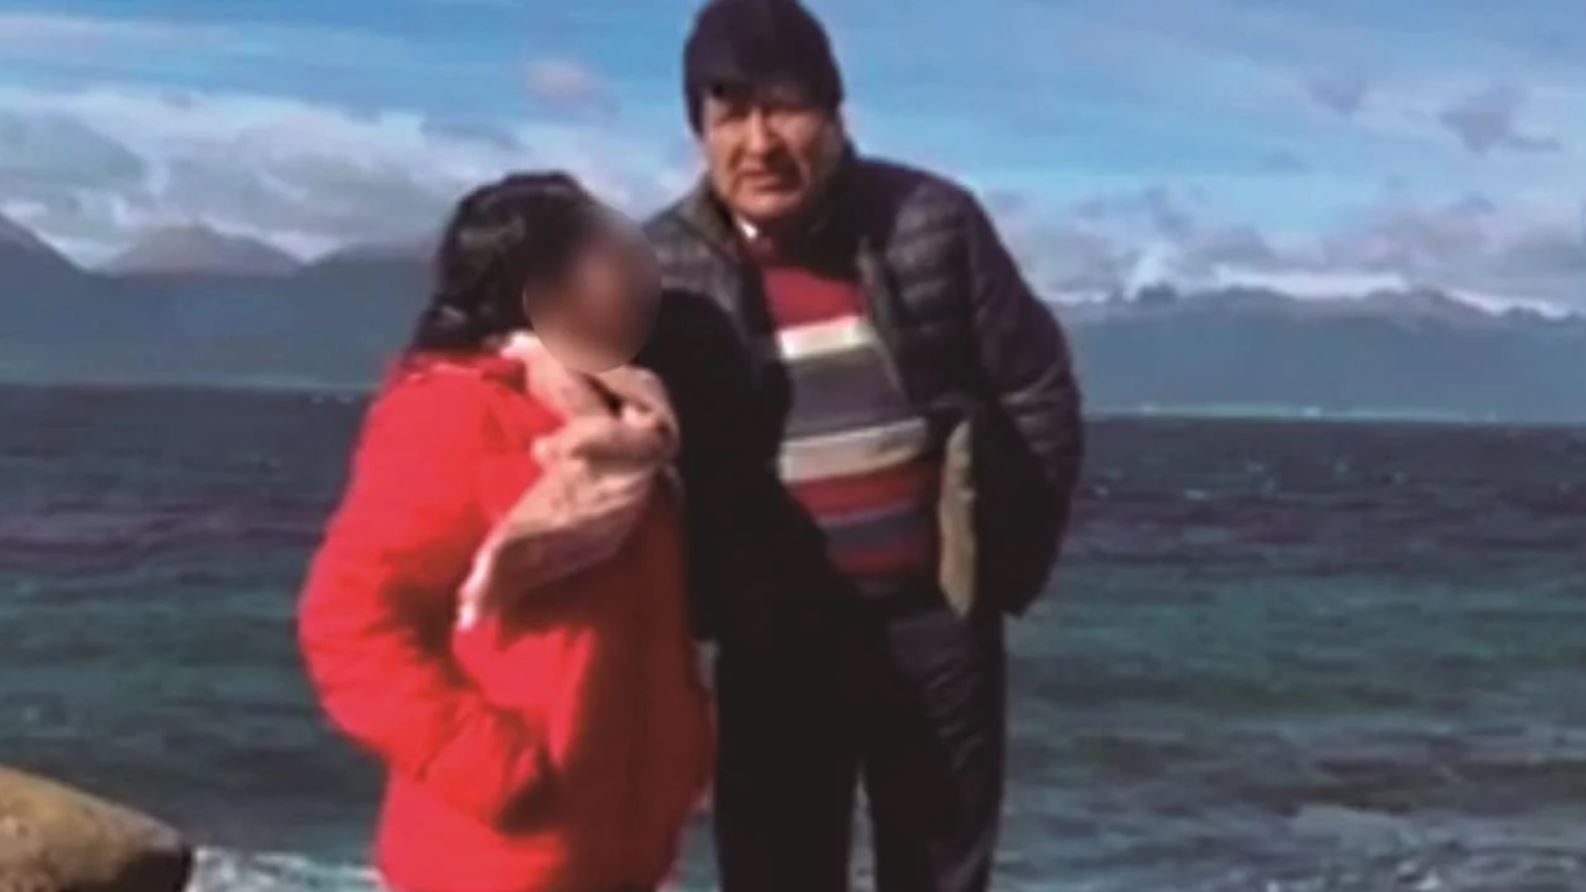 Revelan cómo Evo Morales sacó de Bolivia a la joven con la que está involucrado en caso de pedofilia